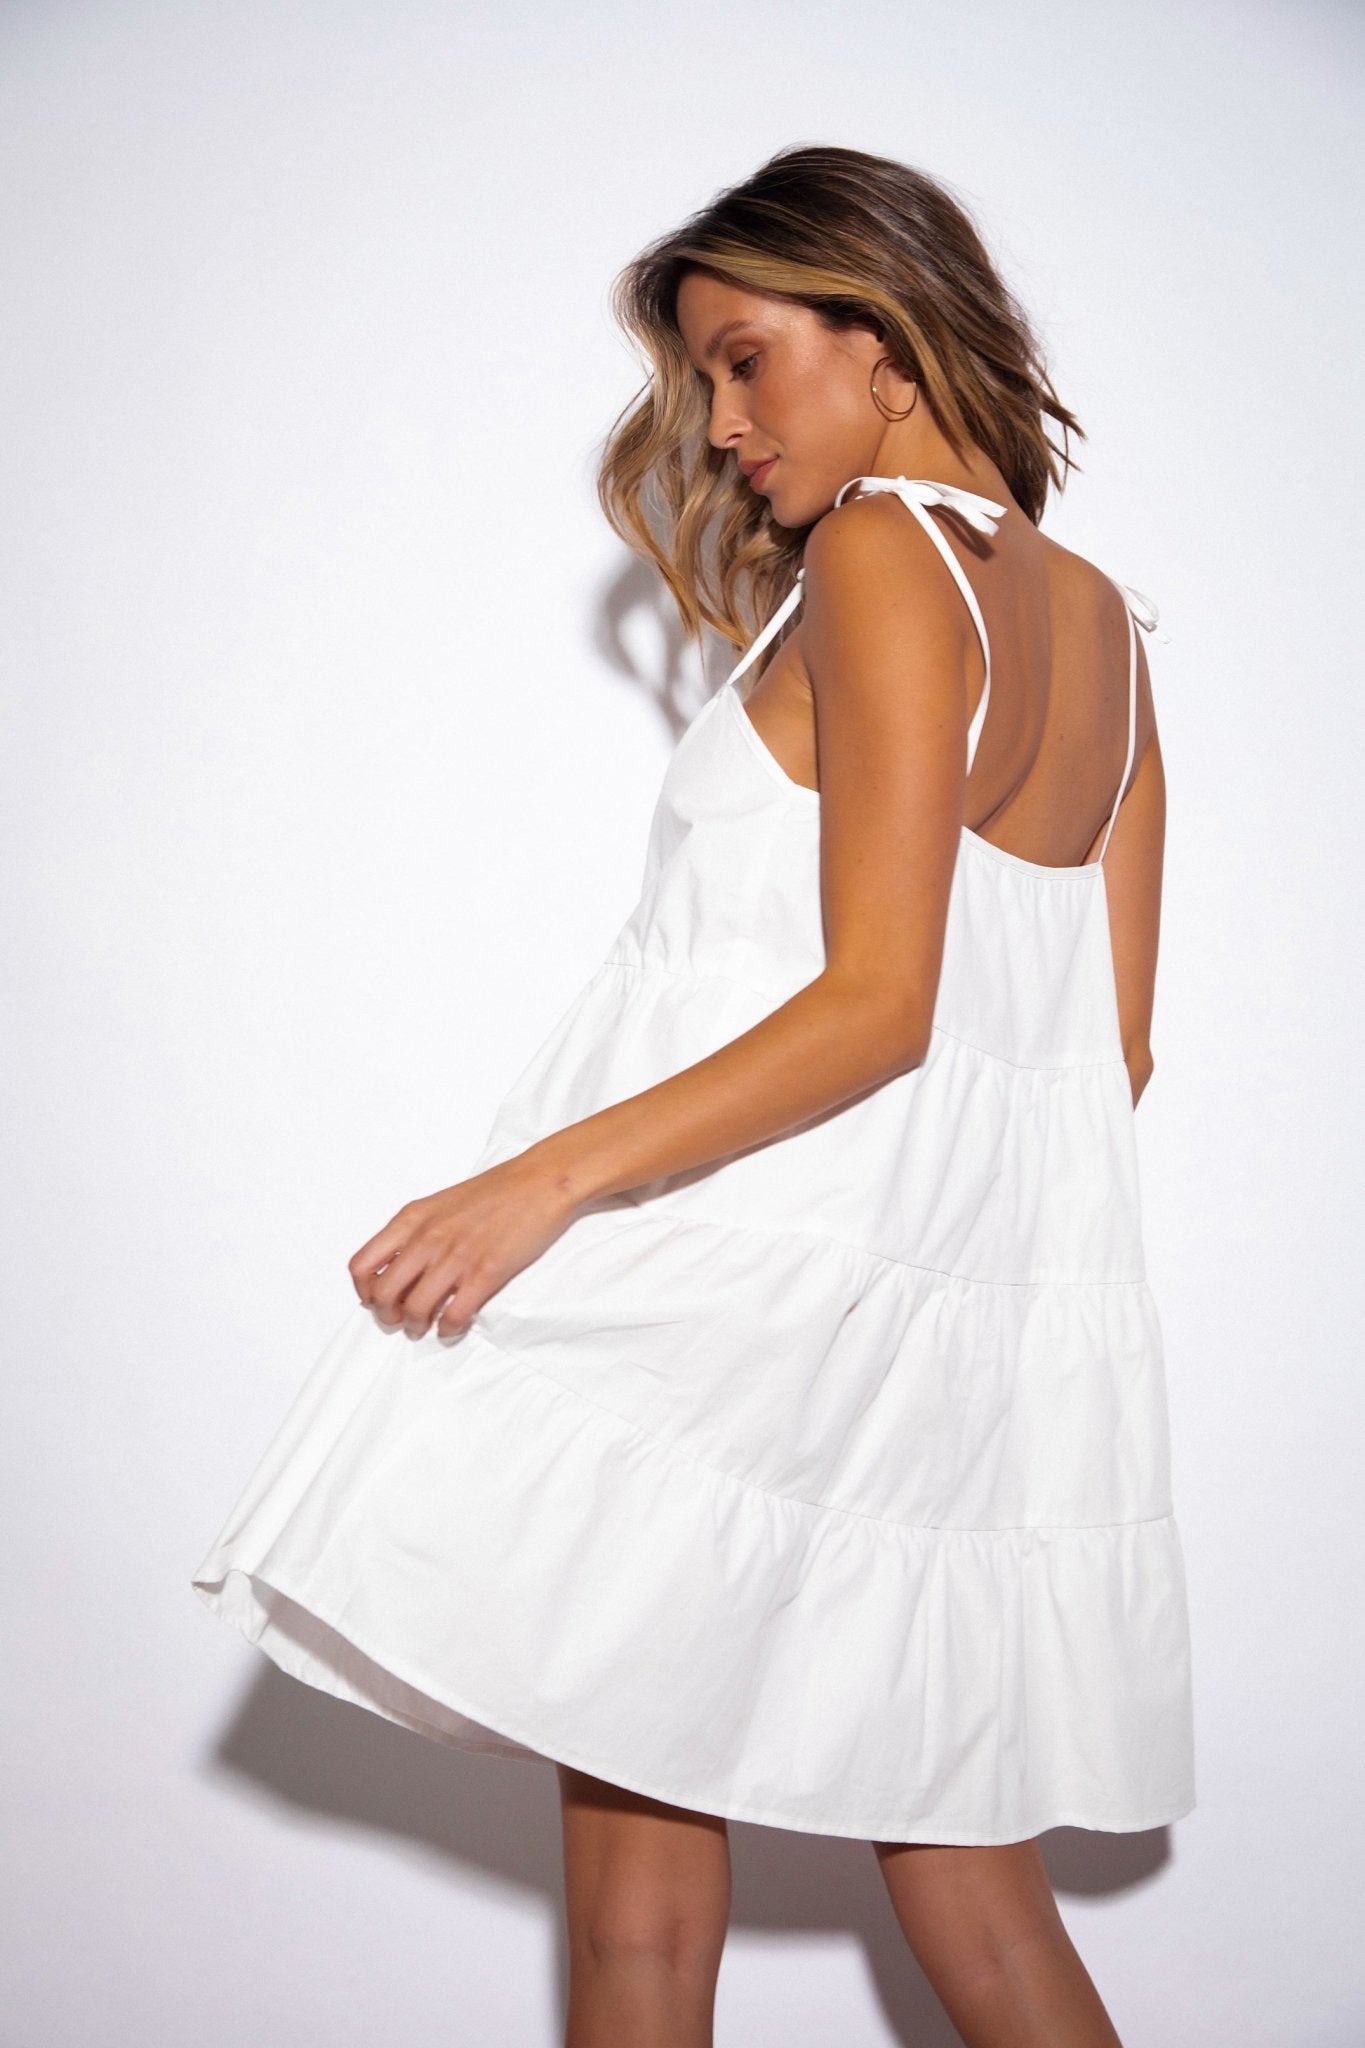 SNDYS St Tropez Mini Dress in White - Hey Sara